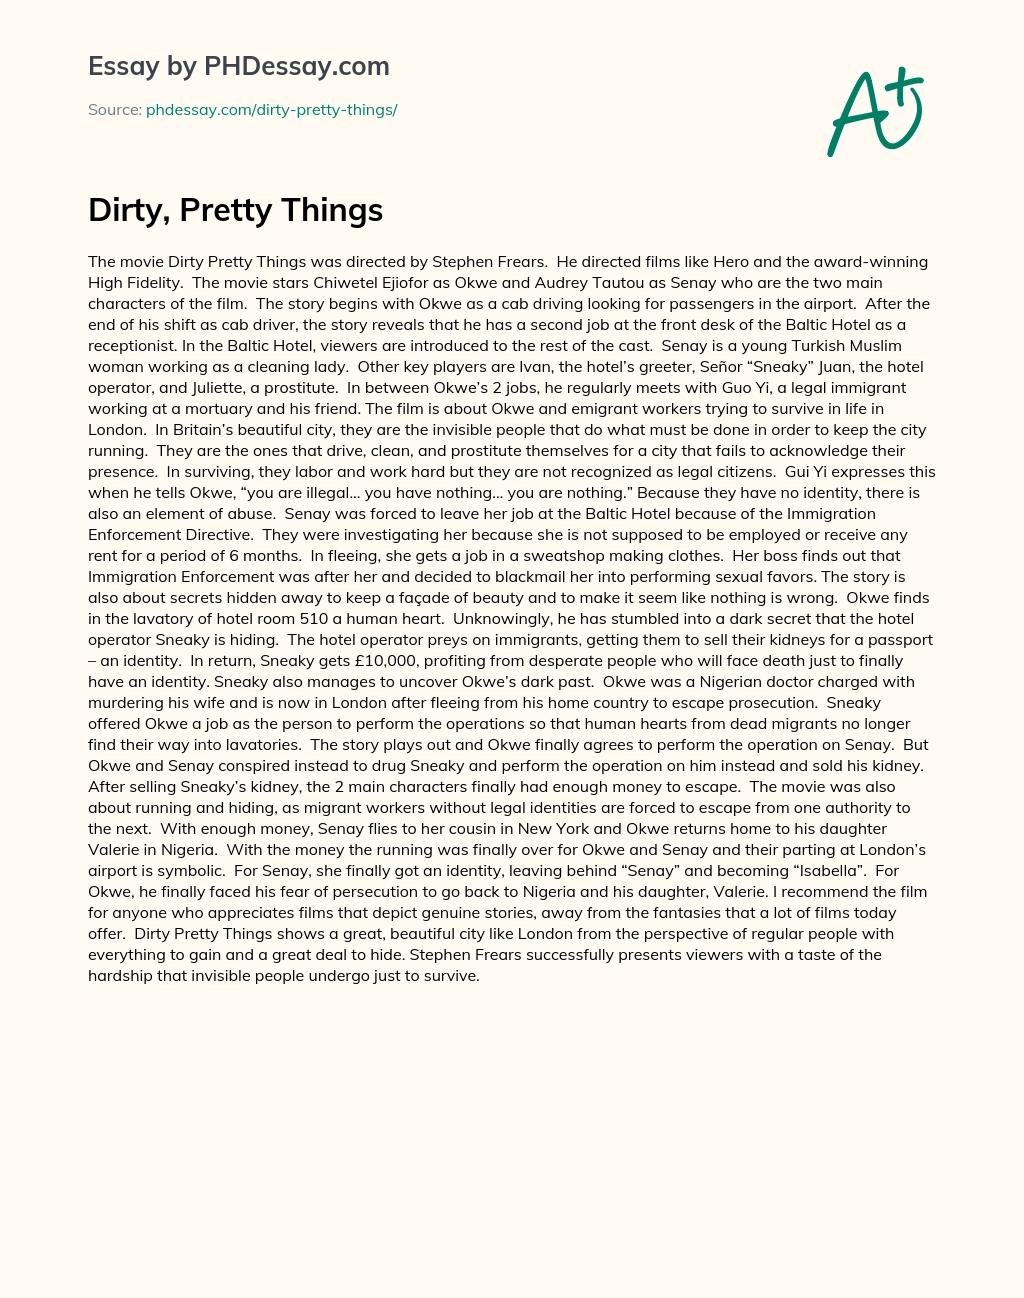 Dirty, Pretty Things essay